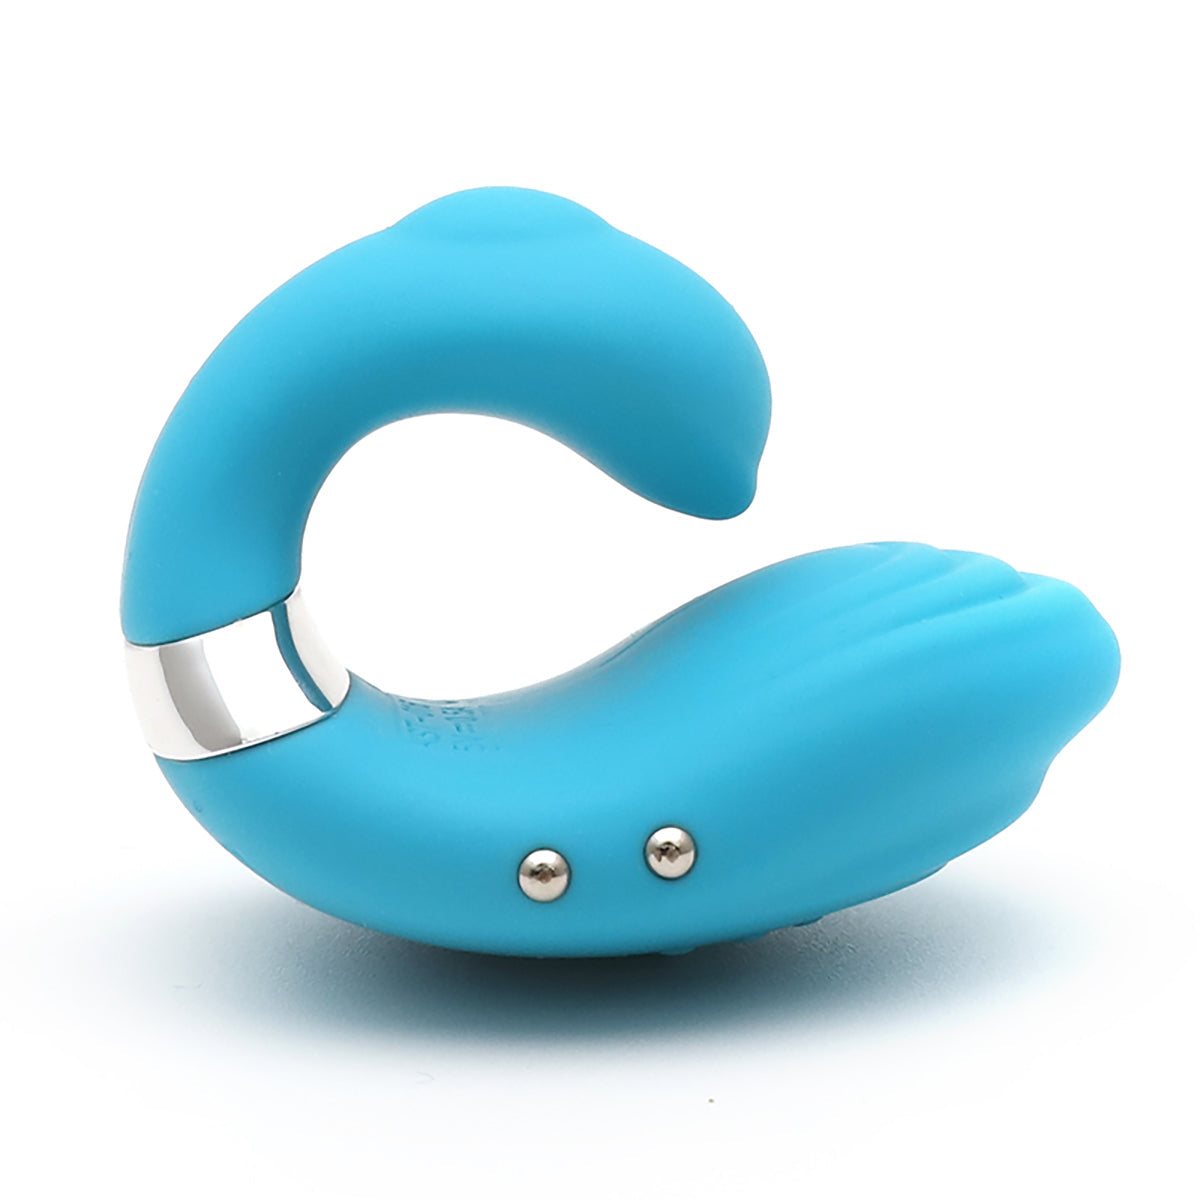 Premium finger vibrator with elegant swan design.